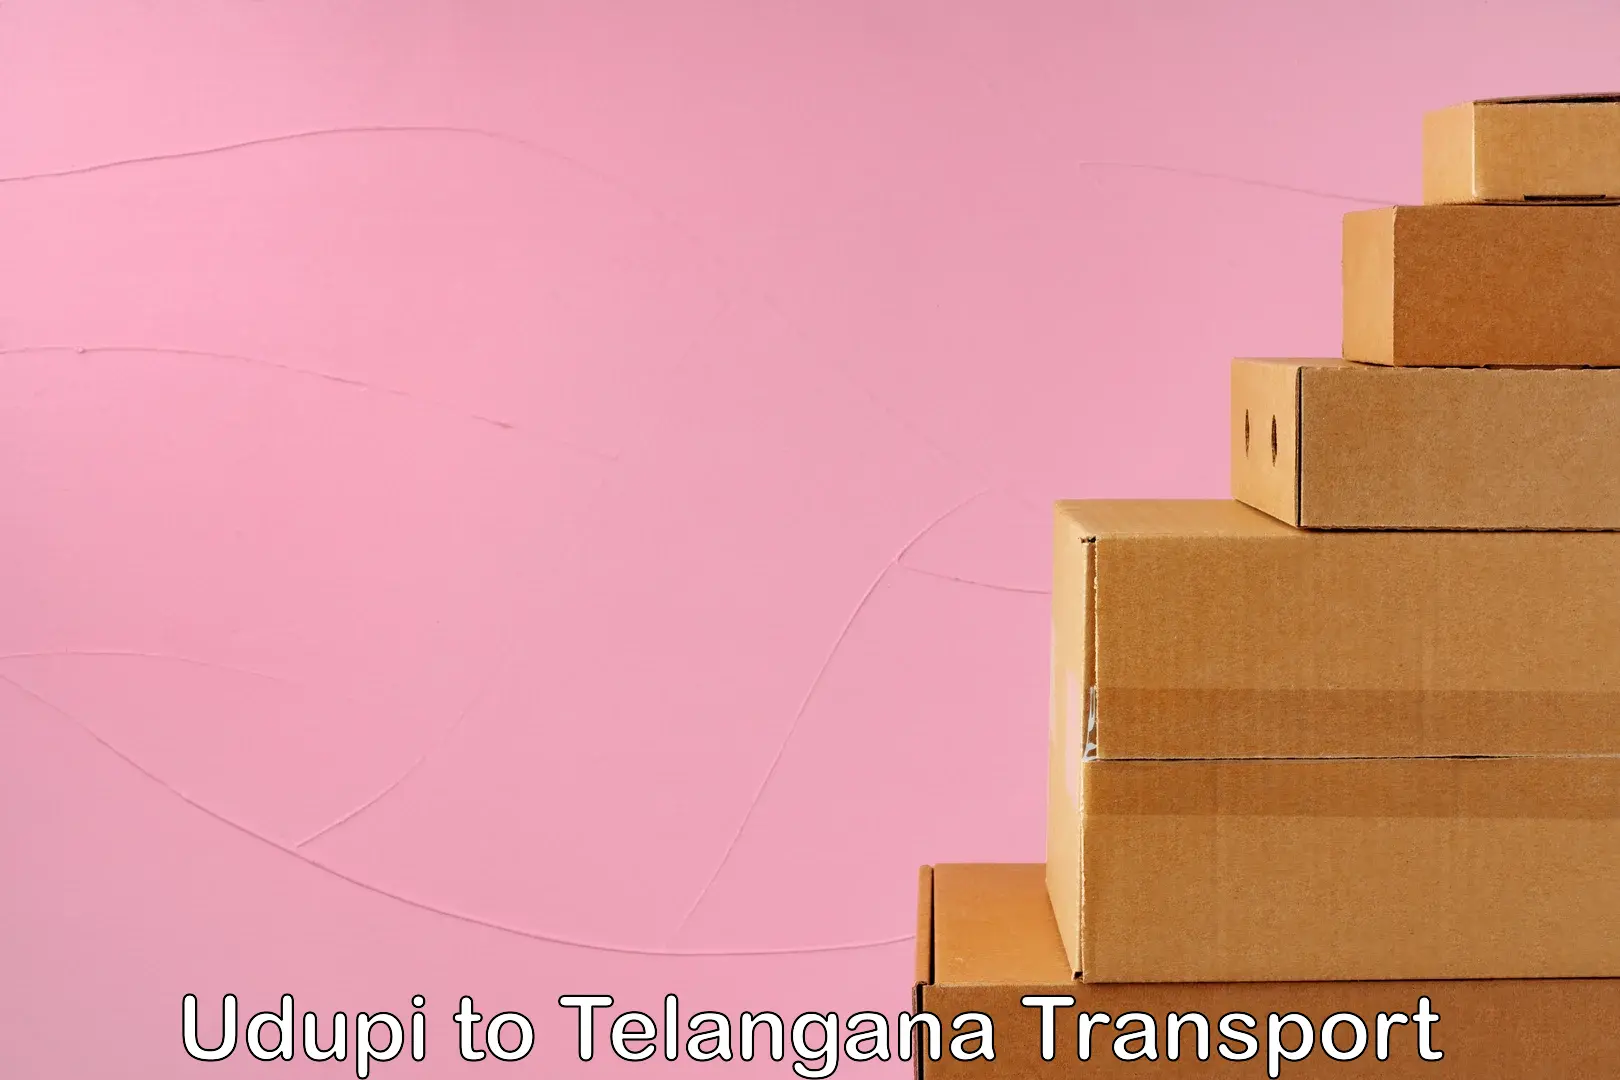 Transportation services Udupi to Telangana